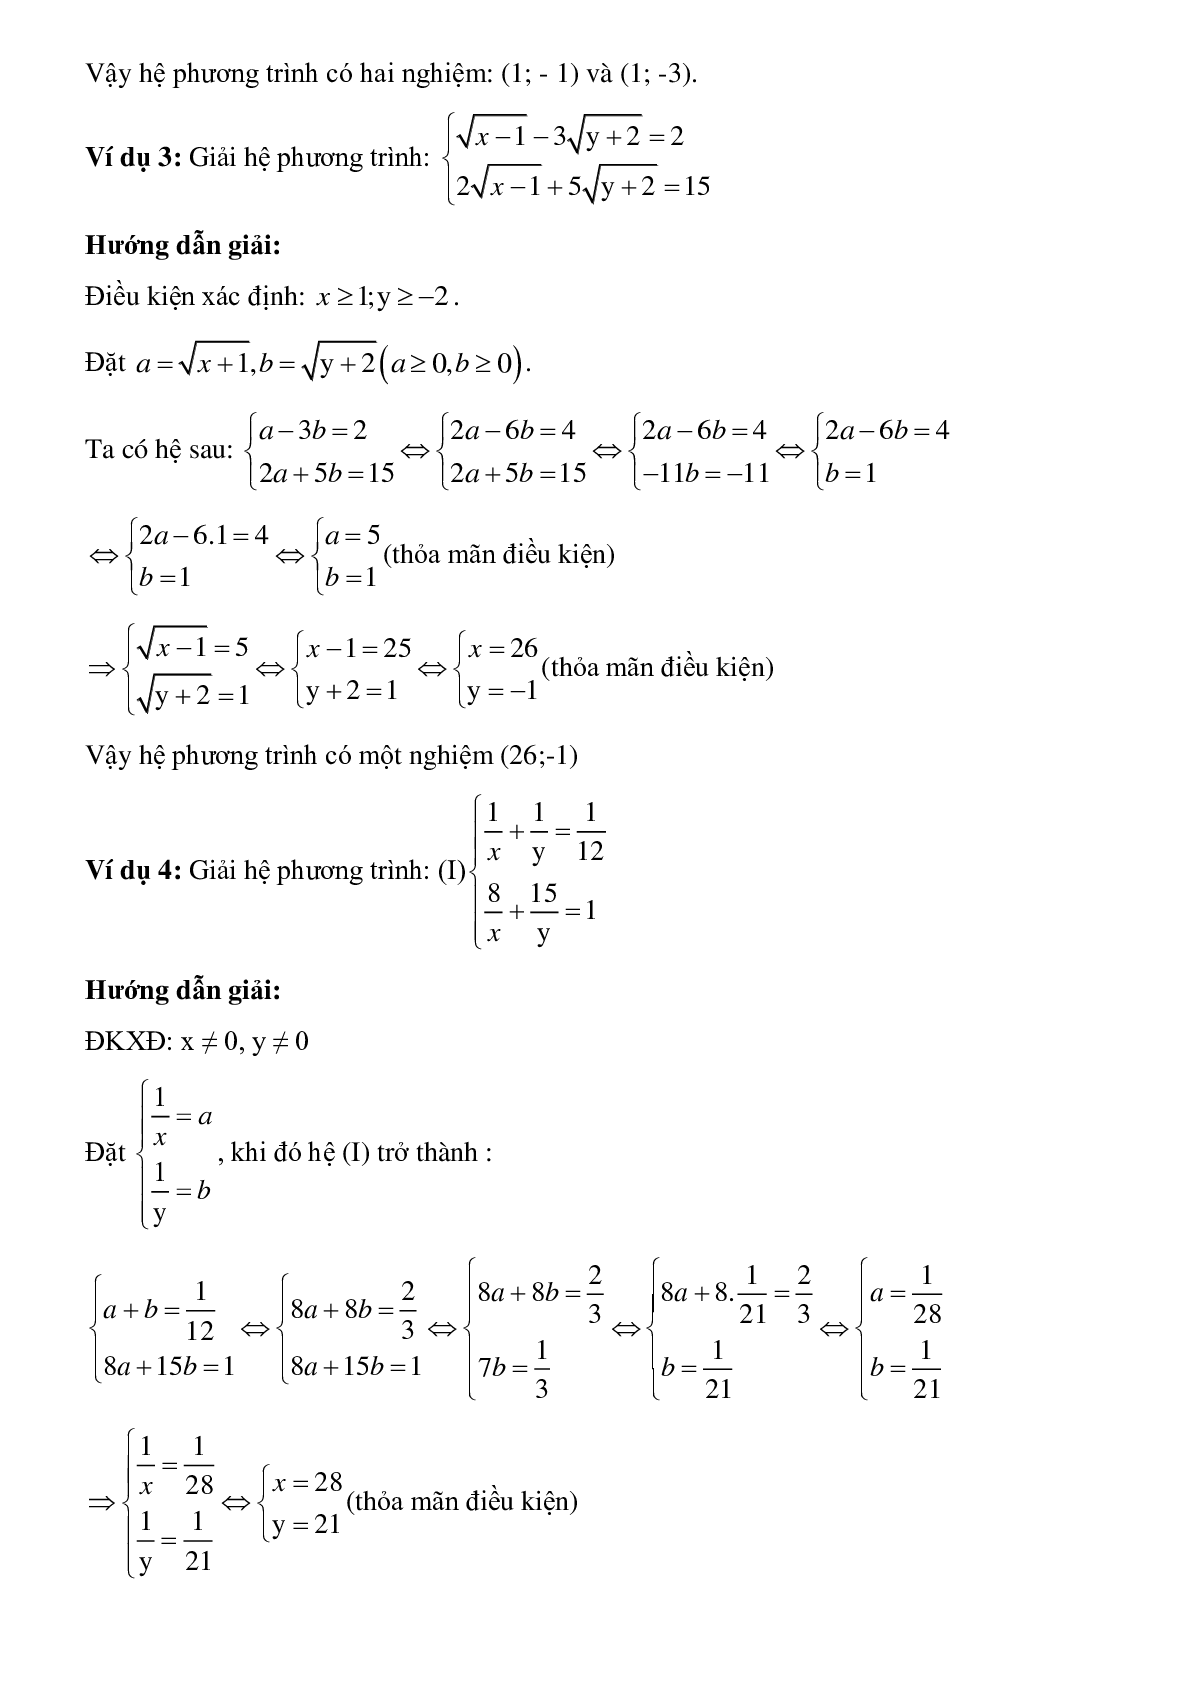 Bài tập về Giải hệ phương trình bằng phương pháp đặt ẩn phụ có lời giải (trang 2)